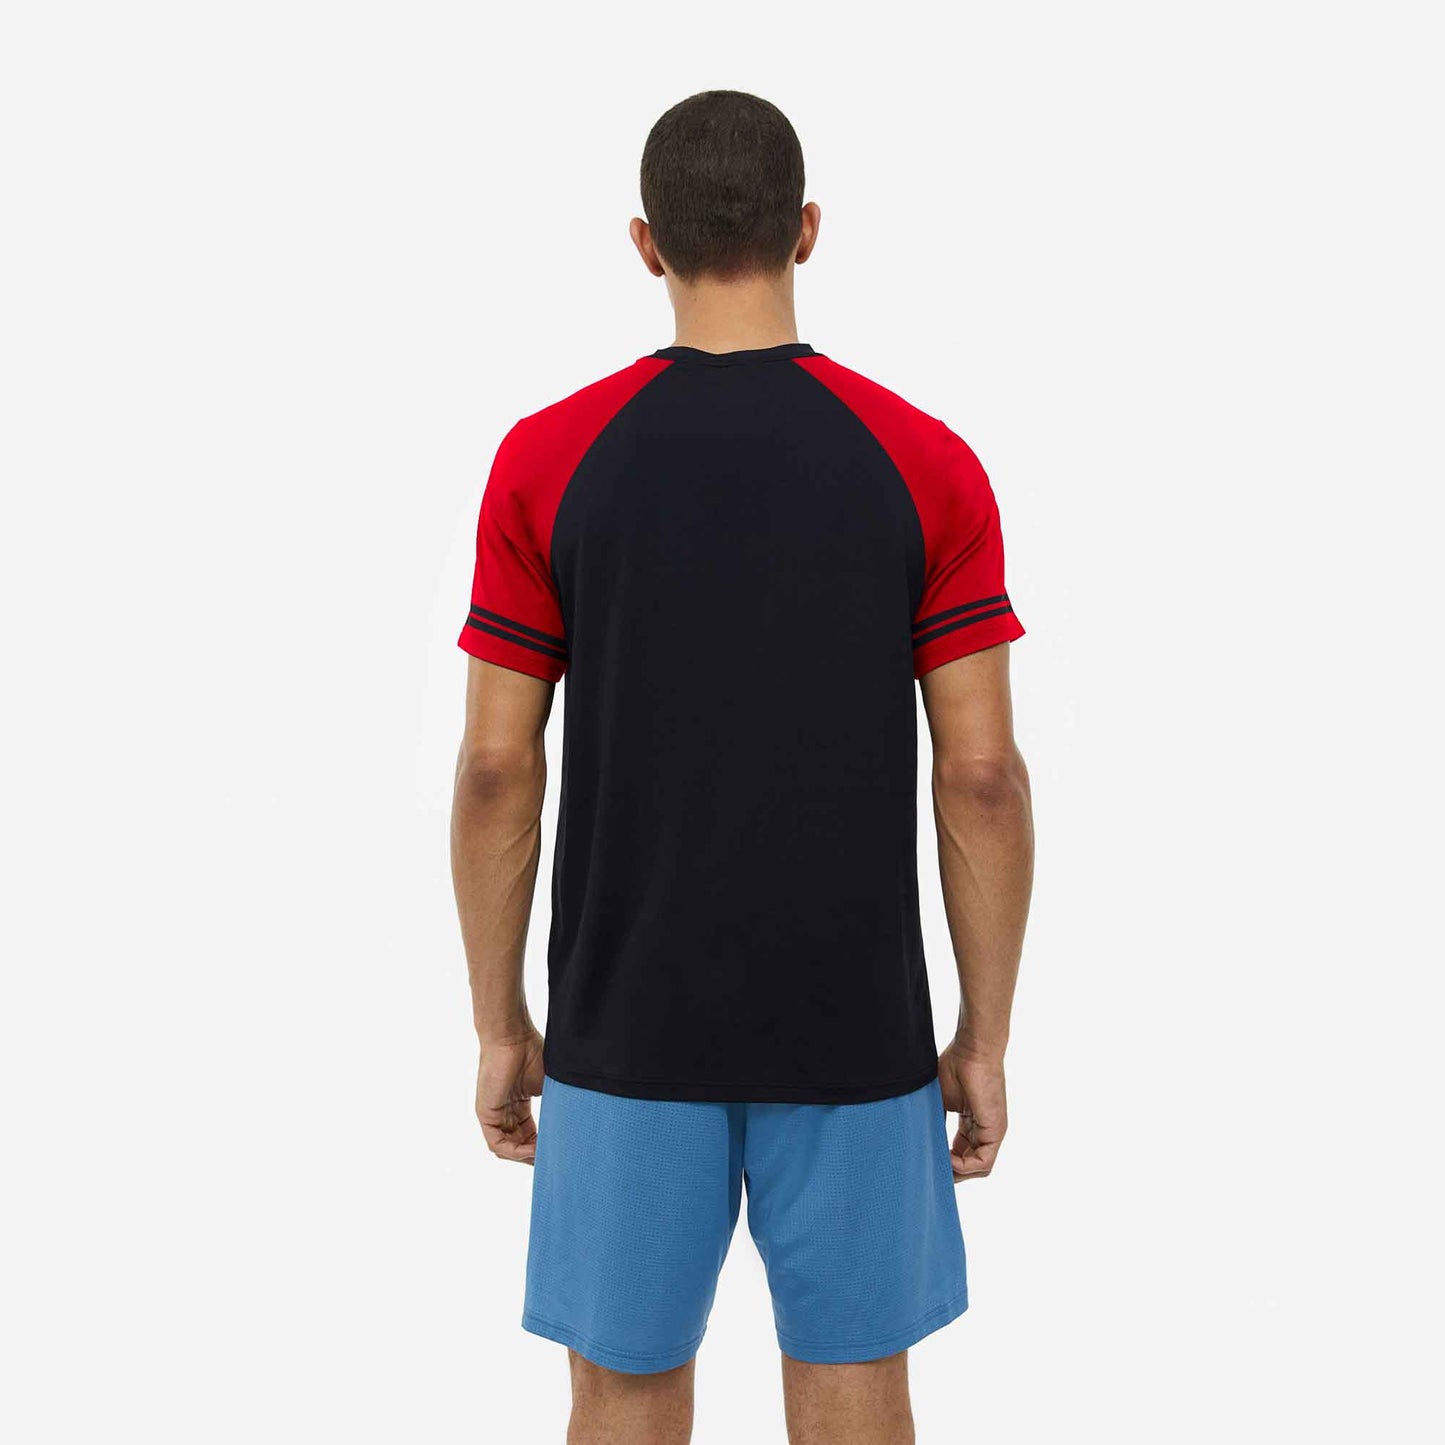 Poler Men's Contrast Shoulder Raglan Activewear Tee Shirt Men's Tee Shirt IBT 